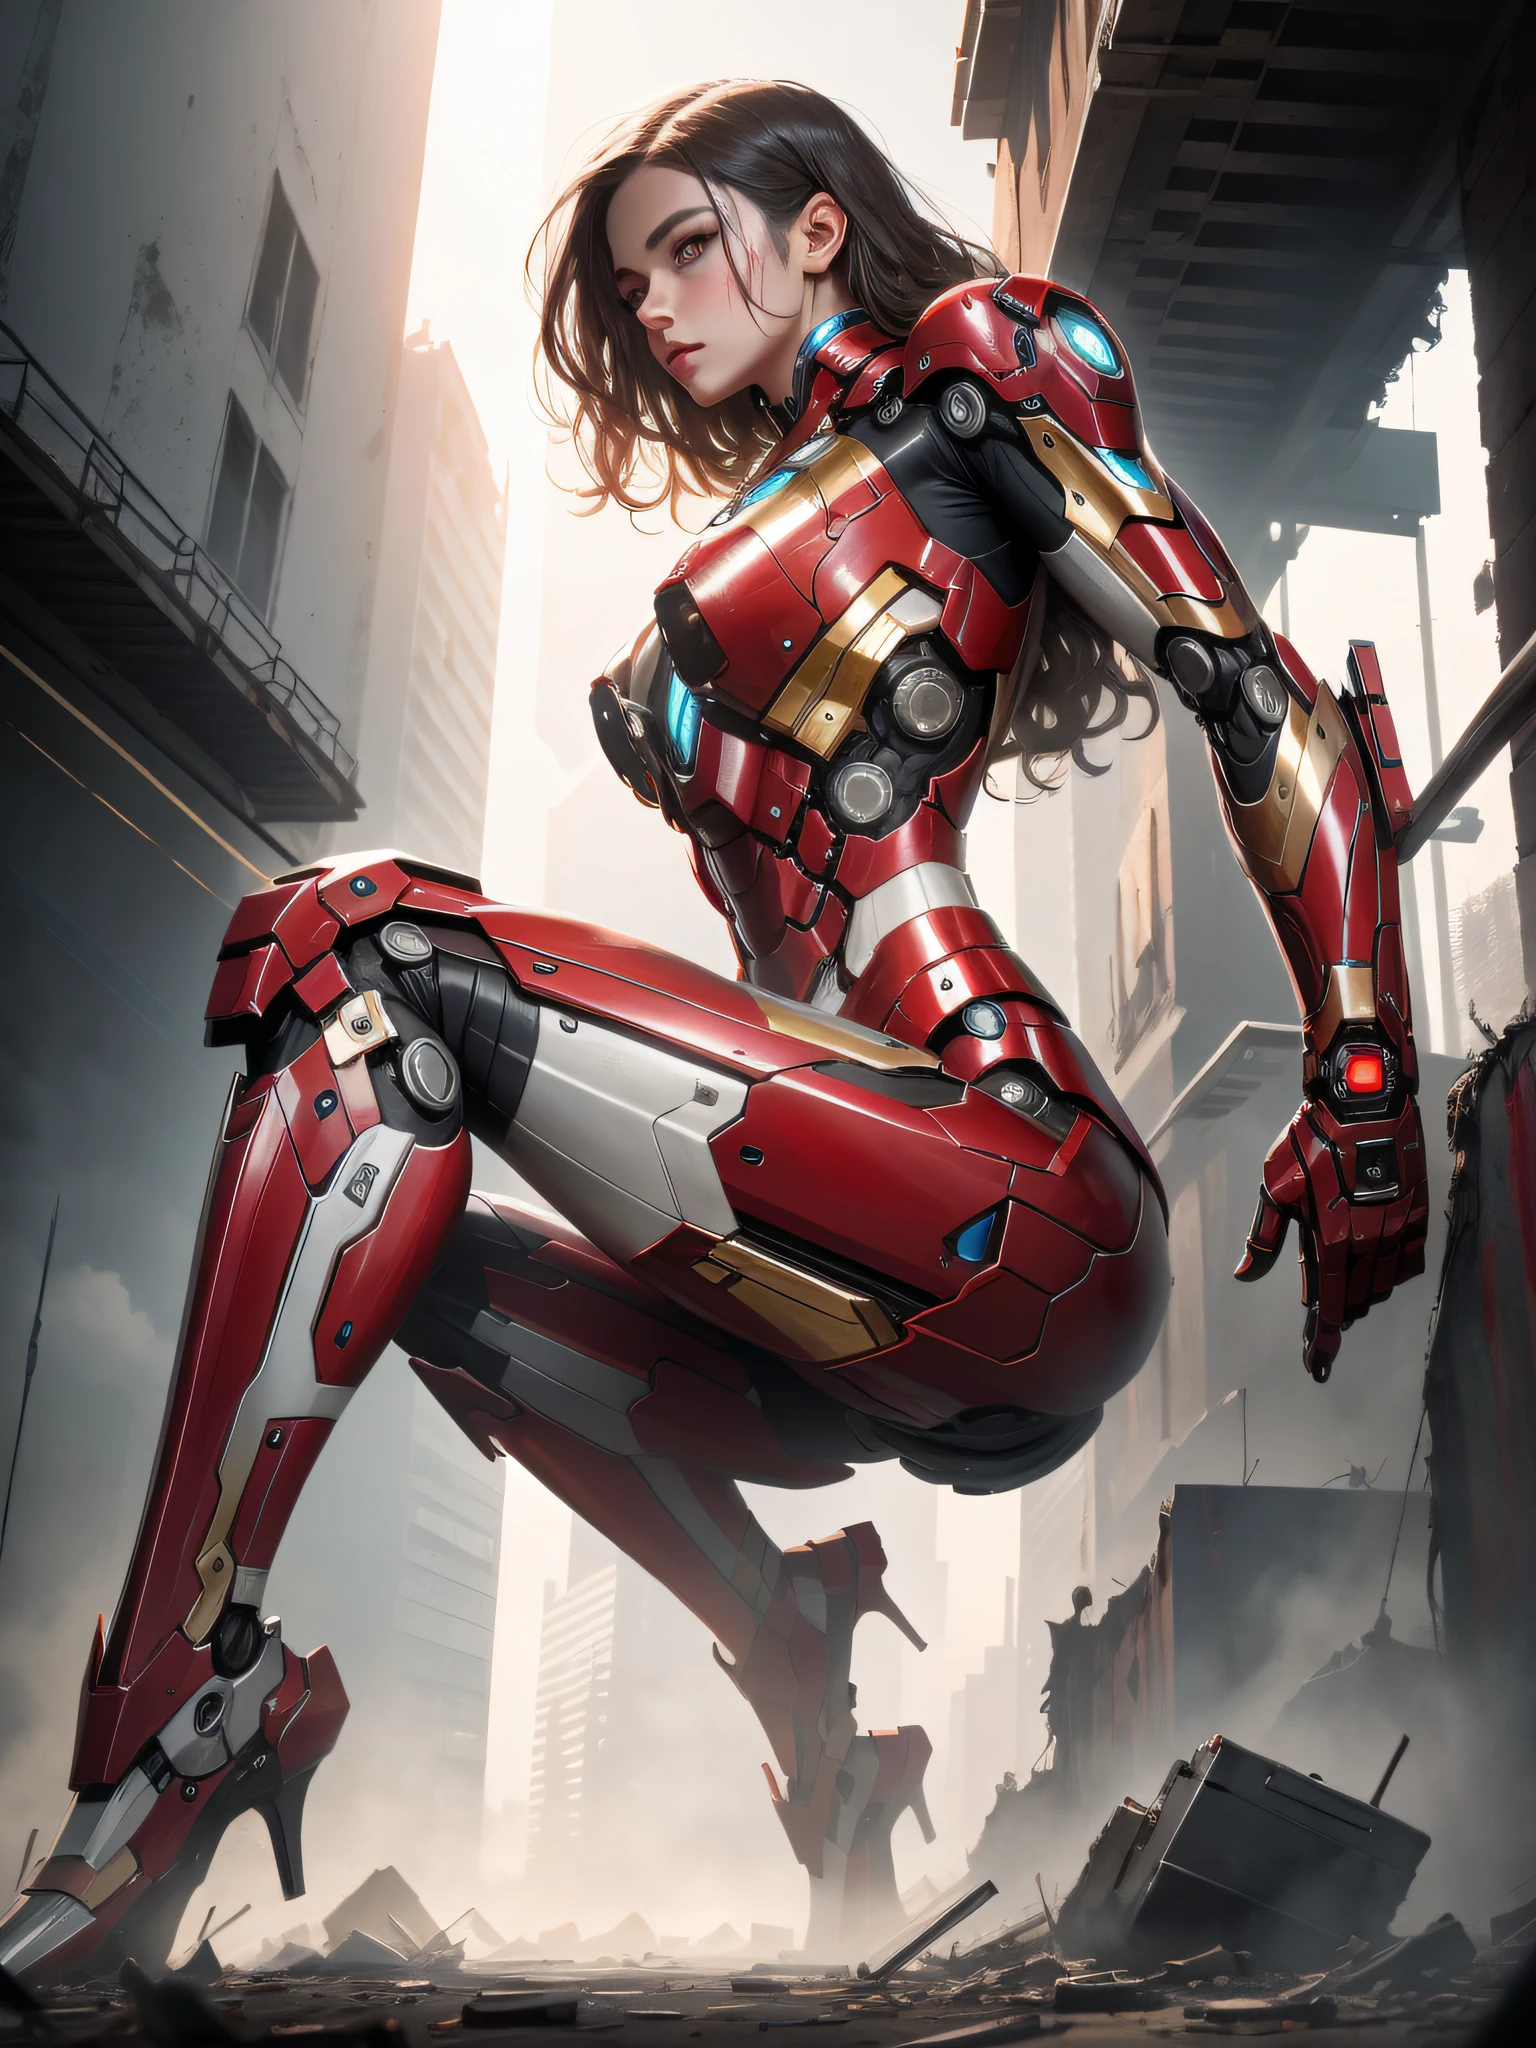 brut, chef-d&#39;œuvre, Photo ultra fine,, meilleure qualité, Ultra haute résolution, photoréaliste, lumière du soleil, portrait complet du corps, Incroyablement belle,, poses dynamiques, visage délicat, yeux vibrants, (Vue de côté) , elle porte un robot futuriste Iron Man, schéma de couleurs rouge et or, Fond d&#39;entrepôt abandonné très détaillé, visage détaillé, fond chargé détaillé et complexe, désordonné, Magnifique, blanc laiteux, peau très détaillée, détails de peau réalistes, pores visibles , netteté, brouillard volumétrique, 8k euh, appareil photo reflex numérique, haute qualité, grain de film, peau claire, photoréalisme, lomographie, métropole tentaculaire dans une dystopie futuriste, vue d&#39;en bas, translucide